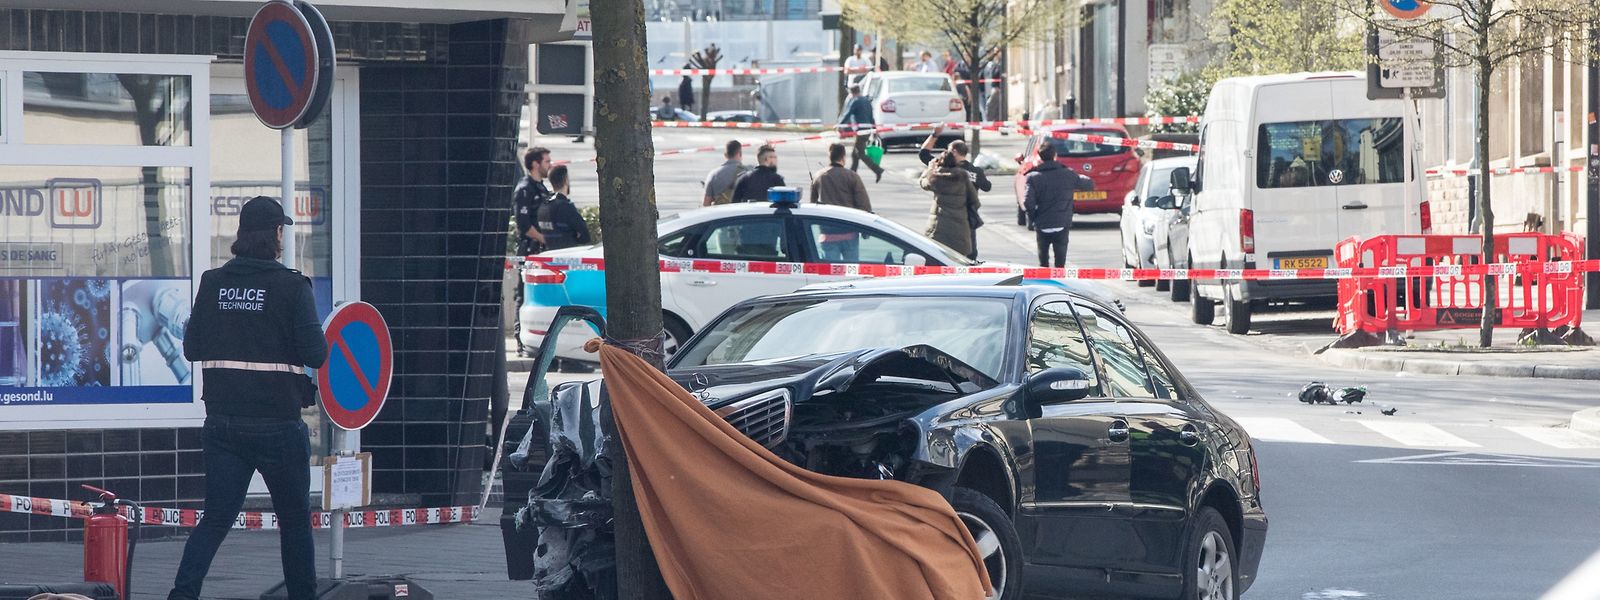 Am 11. April 2018 gibt ein 22-jähriger Polizist in Bonneweg drei Schüsse auf einen mutmaßlich gefährlichen Autofahrer ab. Dieser wird von zwei Kugeln getroffen. Eine ist tödlich. 